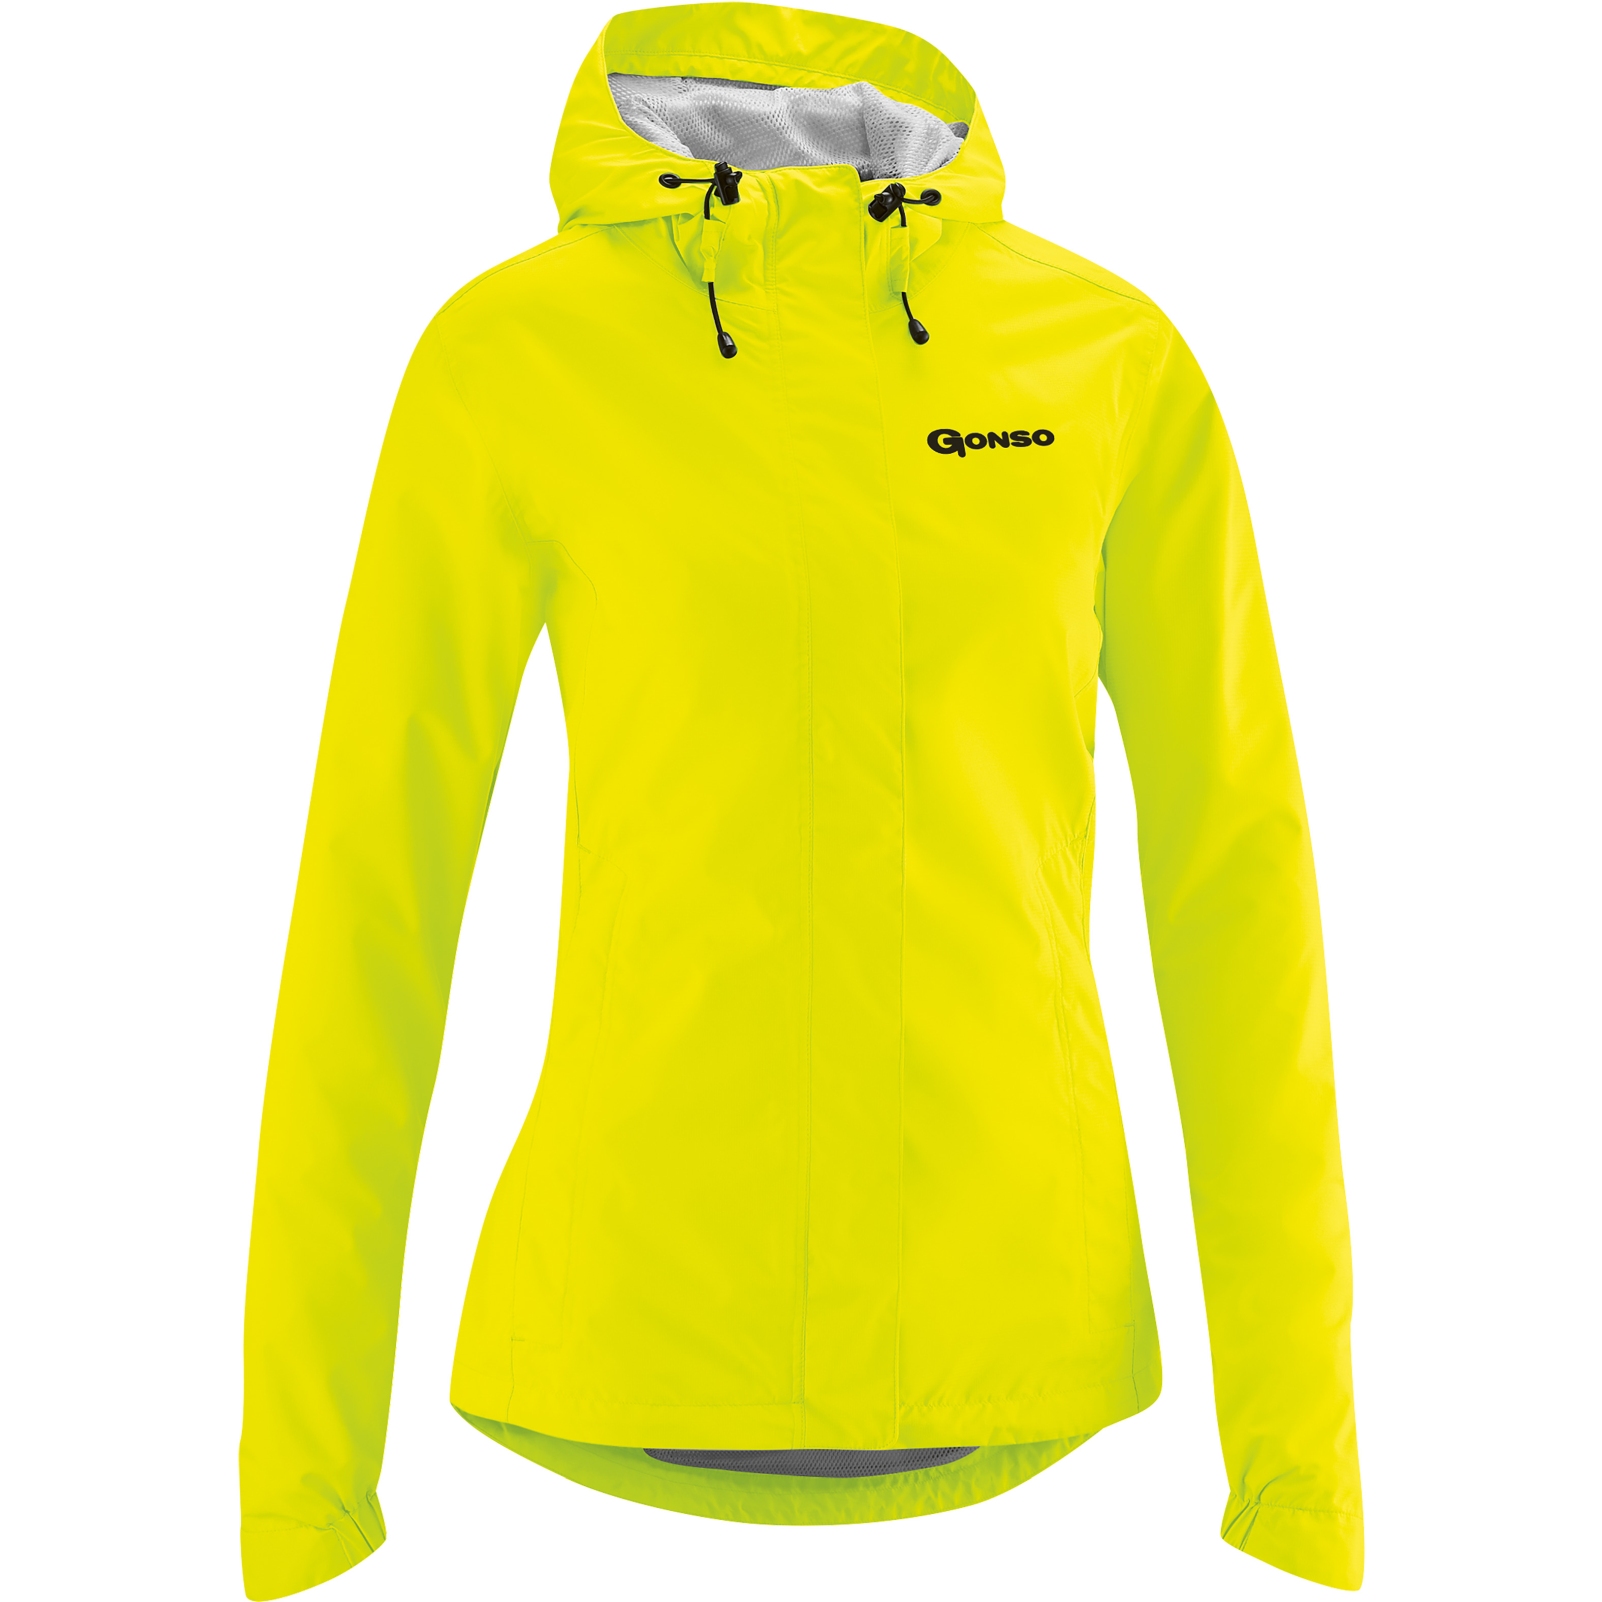 Produktbild von Gonso Sura Light Allwetter Jacke Damen - Safety Yellow